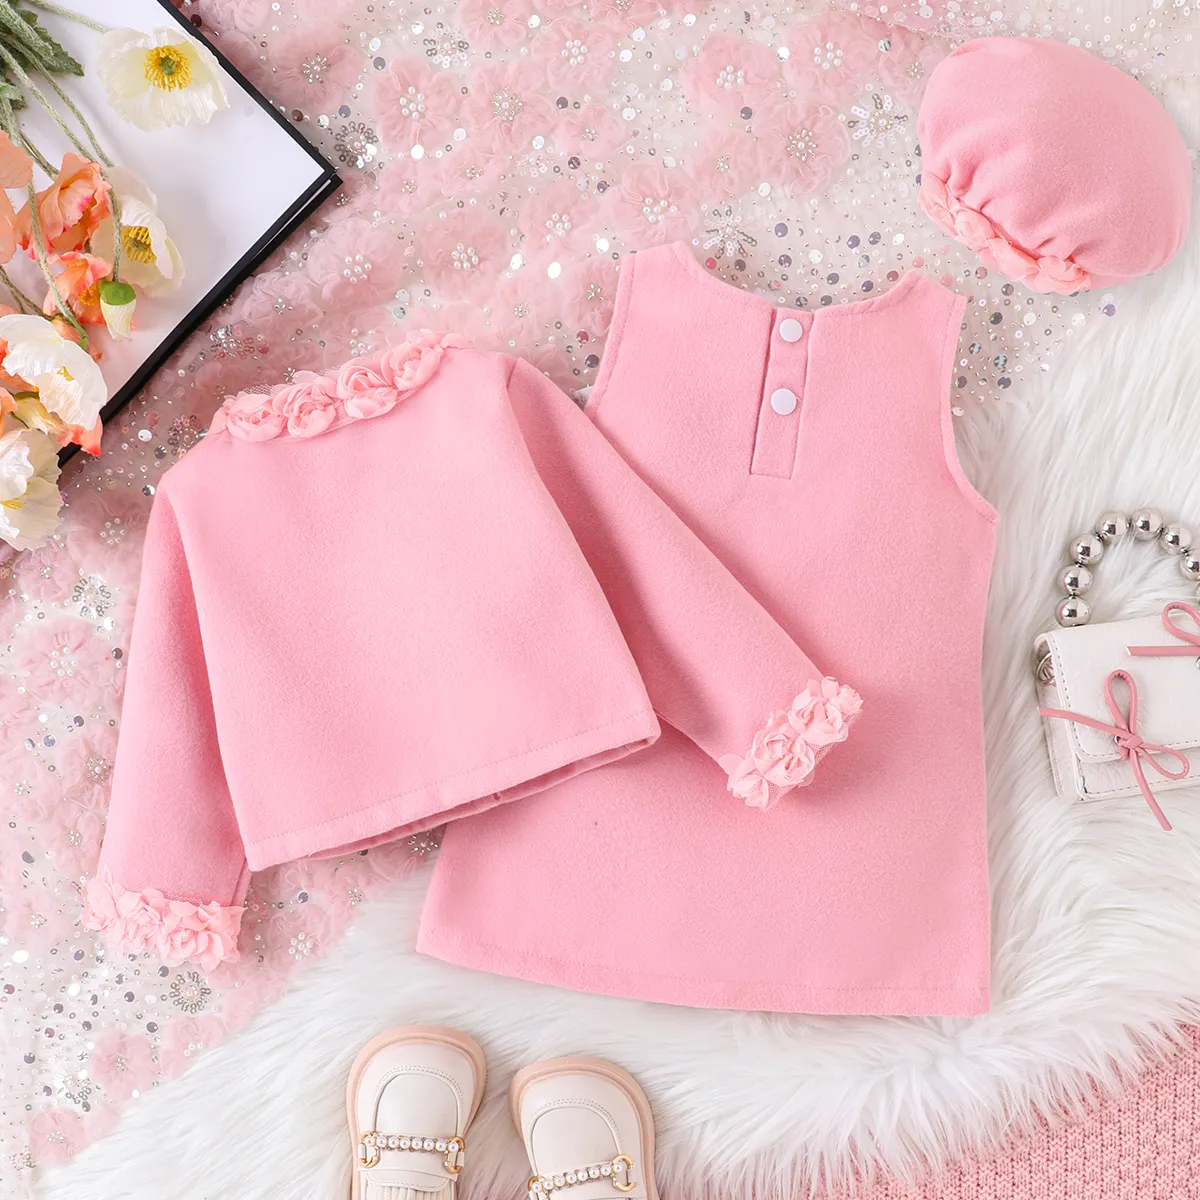 3件 嬰兒 立體造型 甜美 長袖 套裝裙 粉色 big image 1